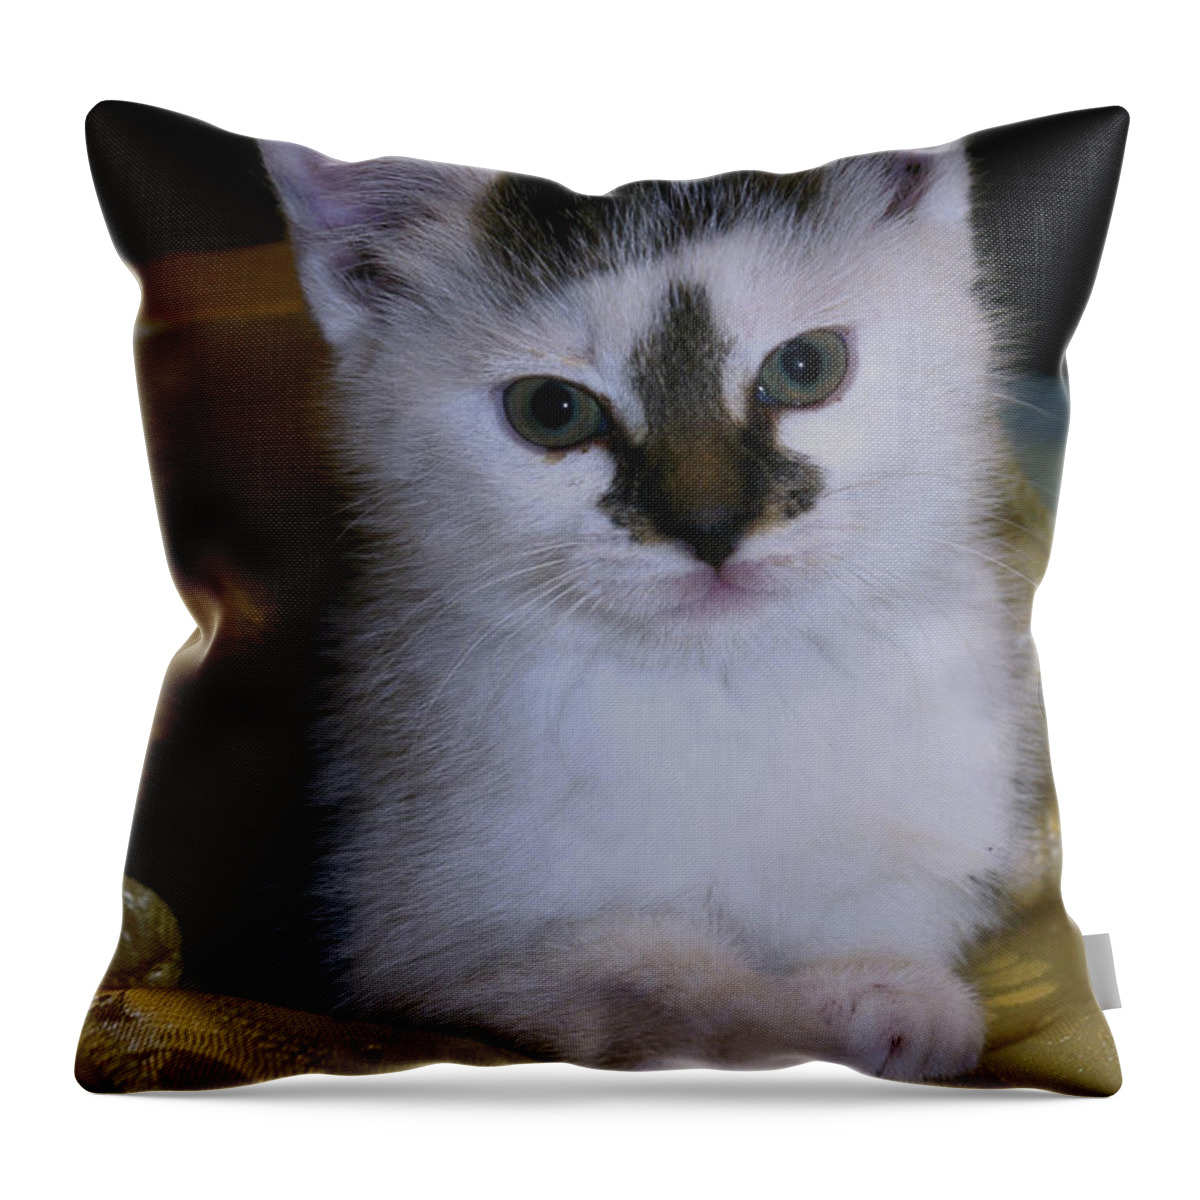 Kitten Throw Pillow featuring the photograph Fleur-de-lis kitten by Bess Carter